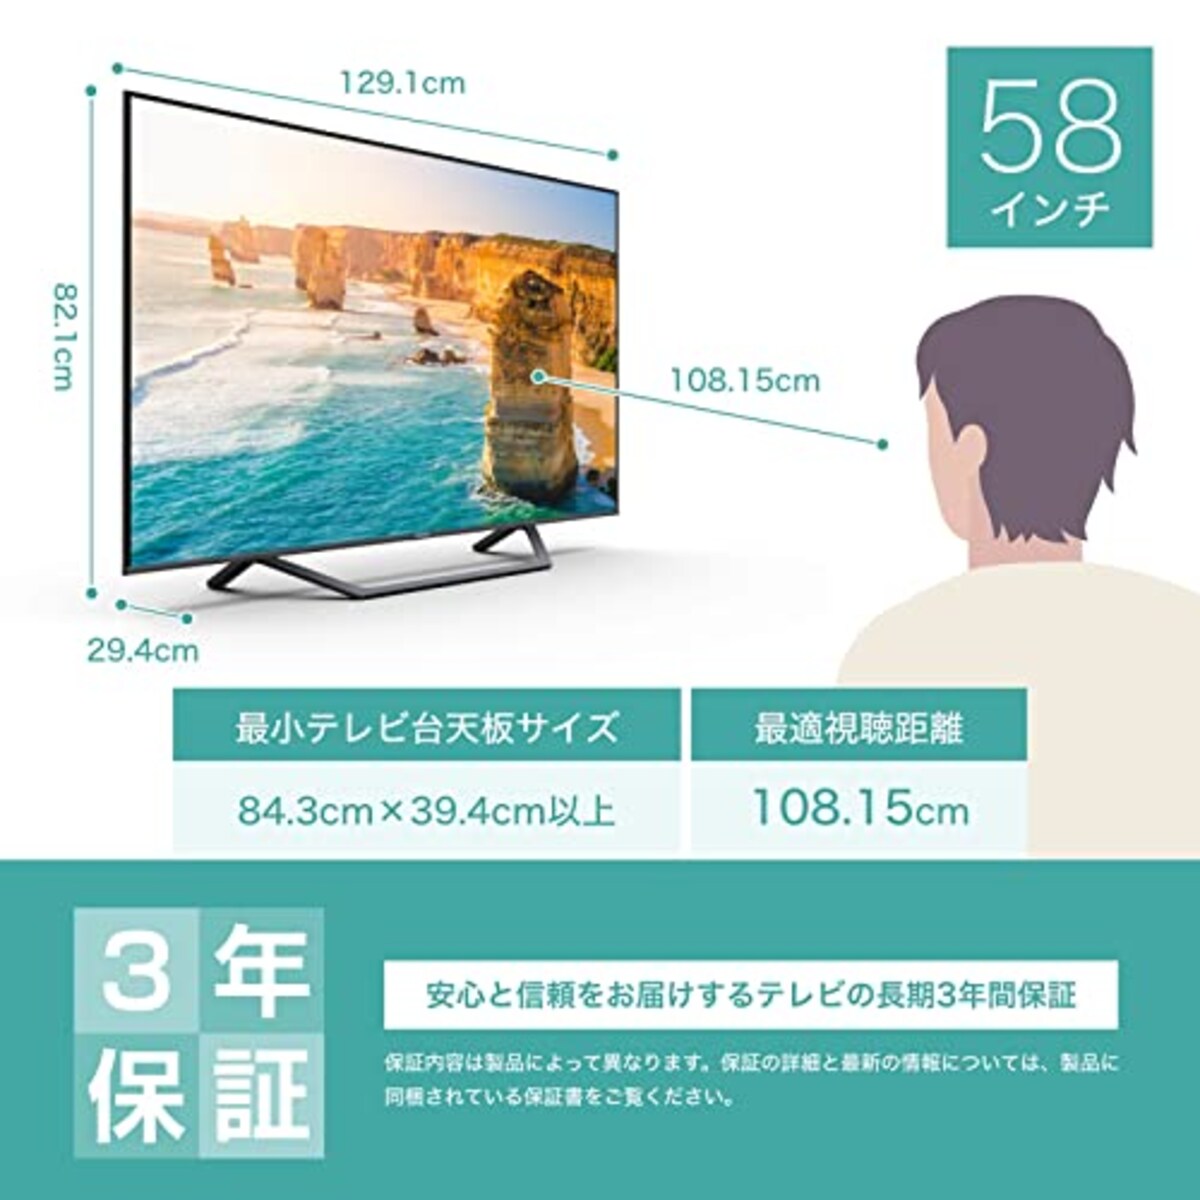  ハイセンス 58V型 4Kチューナー内蔵 液晶 テレビ 58U7FG ネット動画対応 3年保証 2021年モデル ブラック画像2 